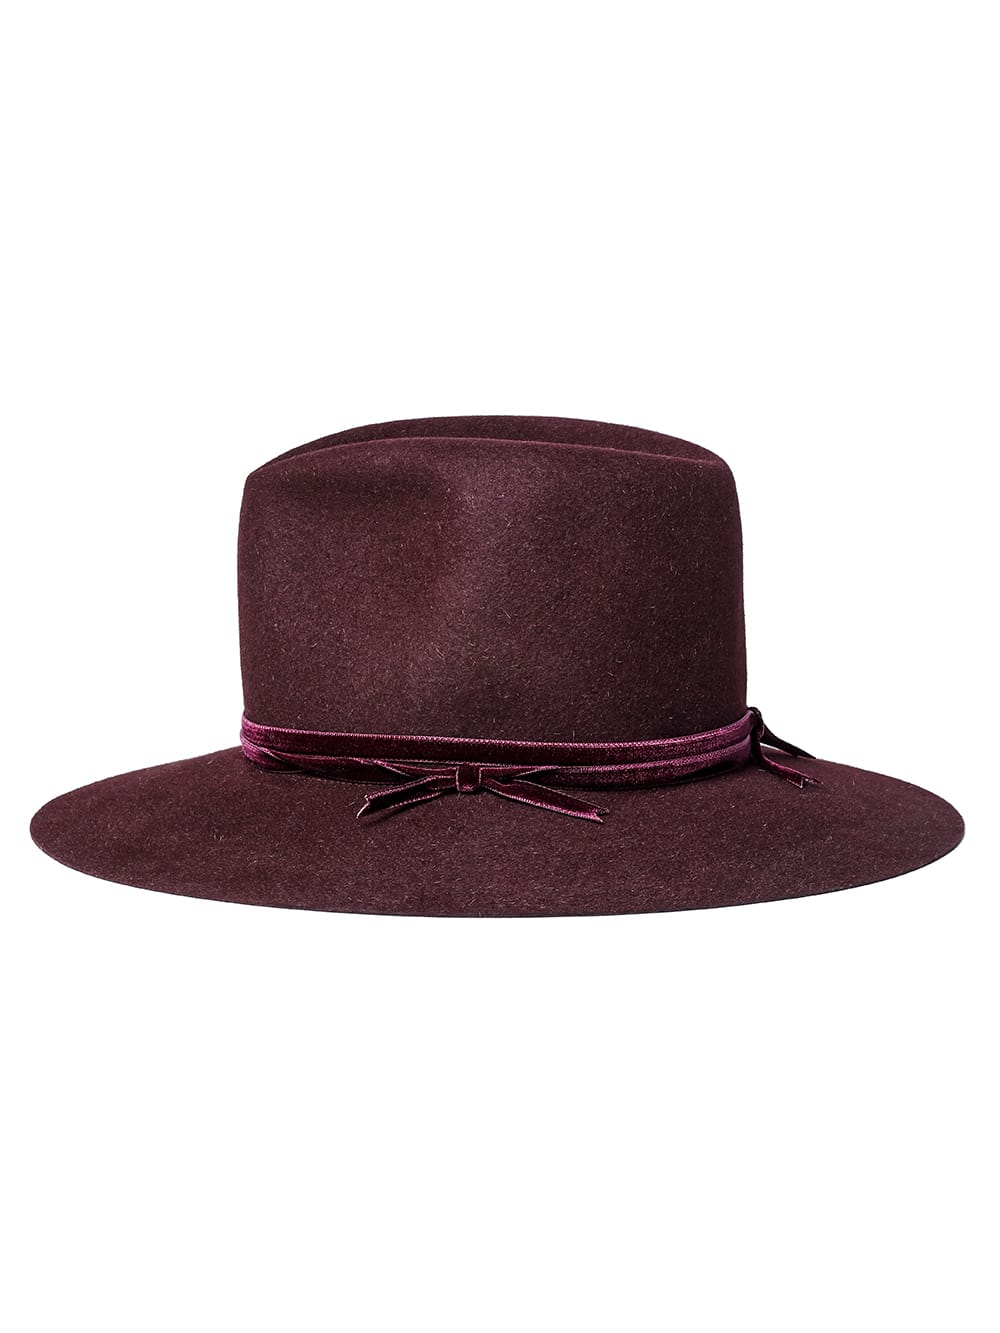 nobled hat./velvet ribbon.